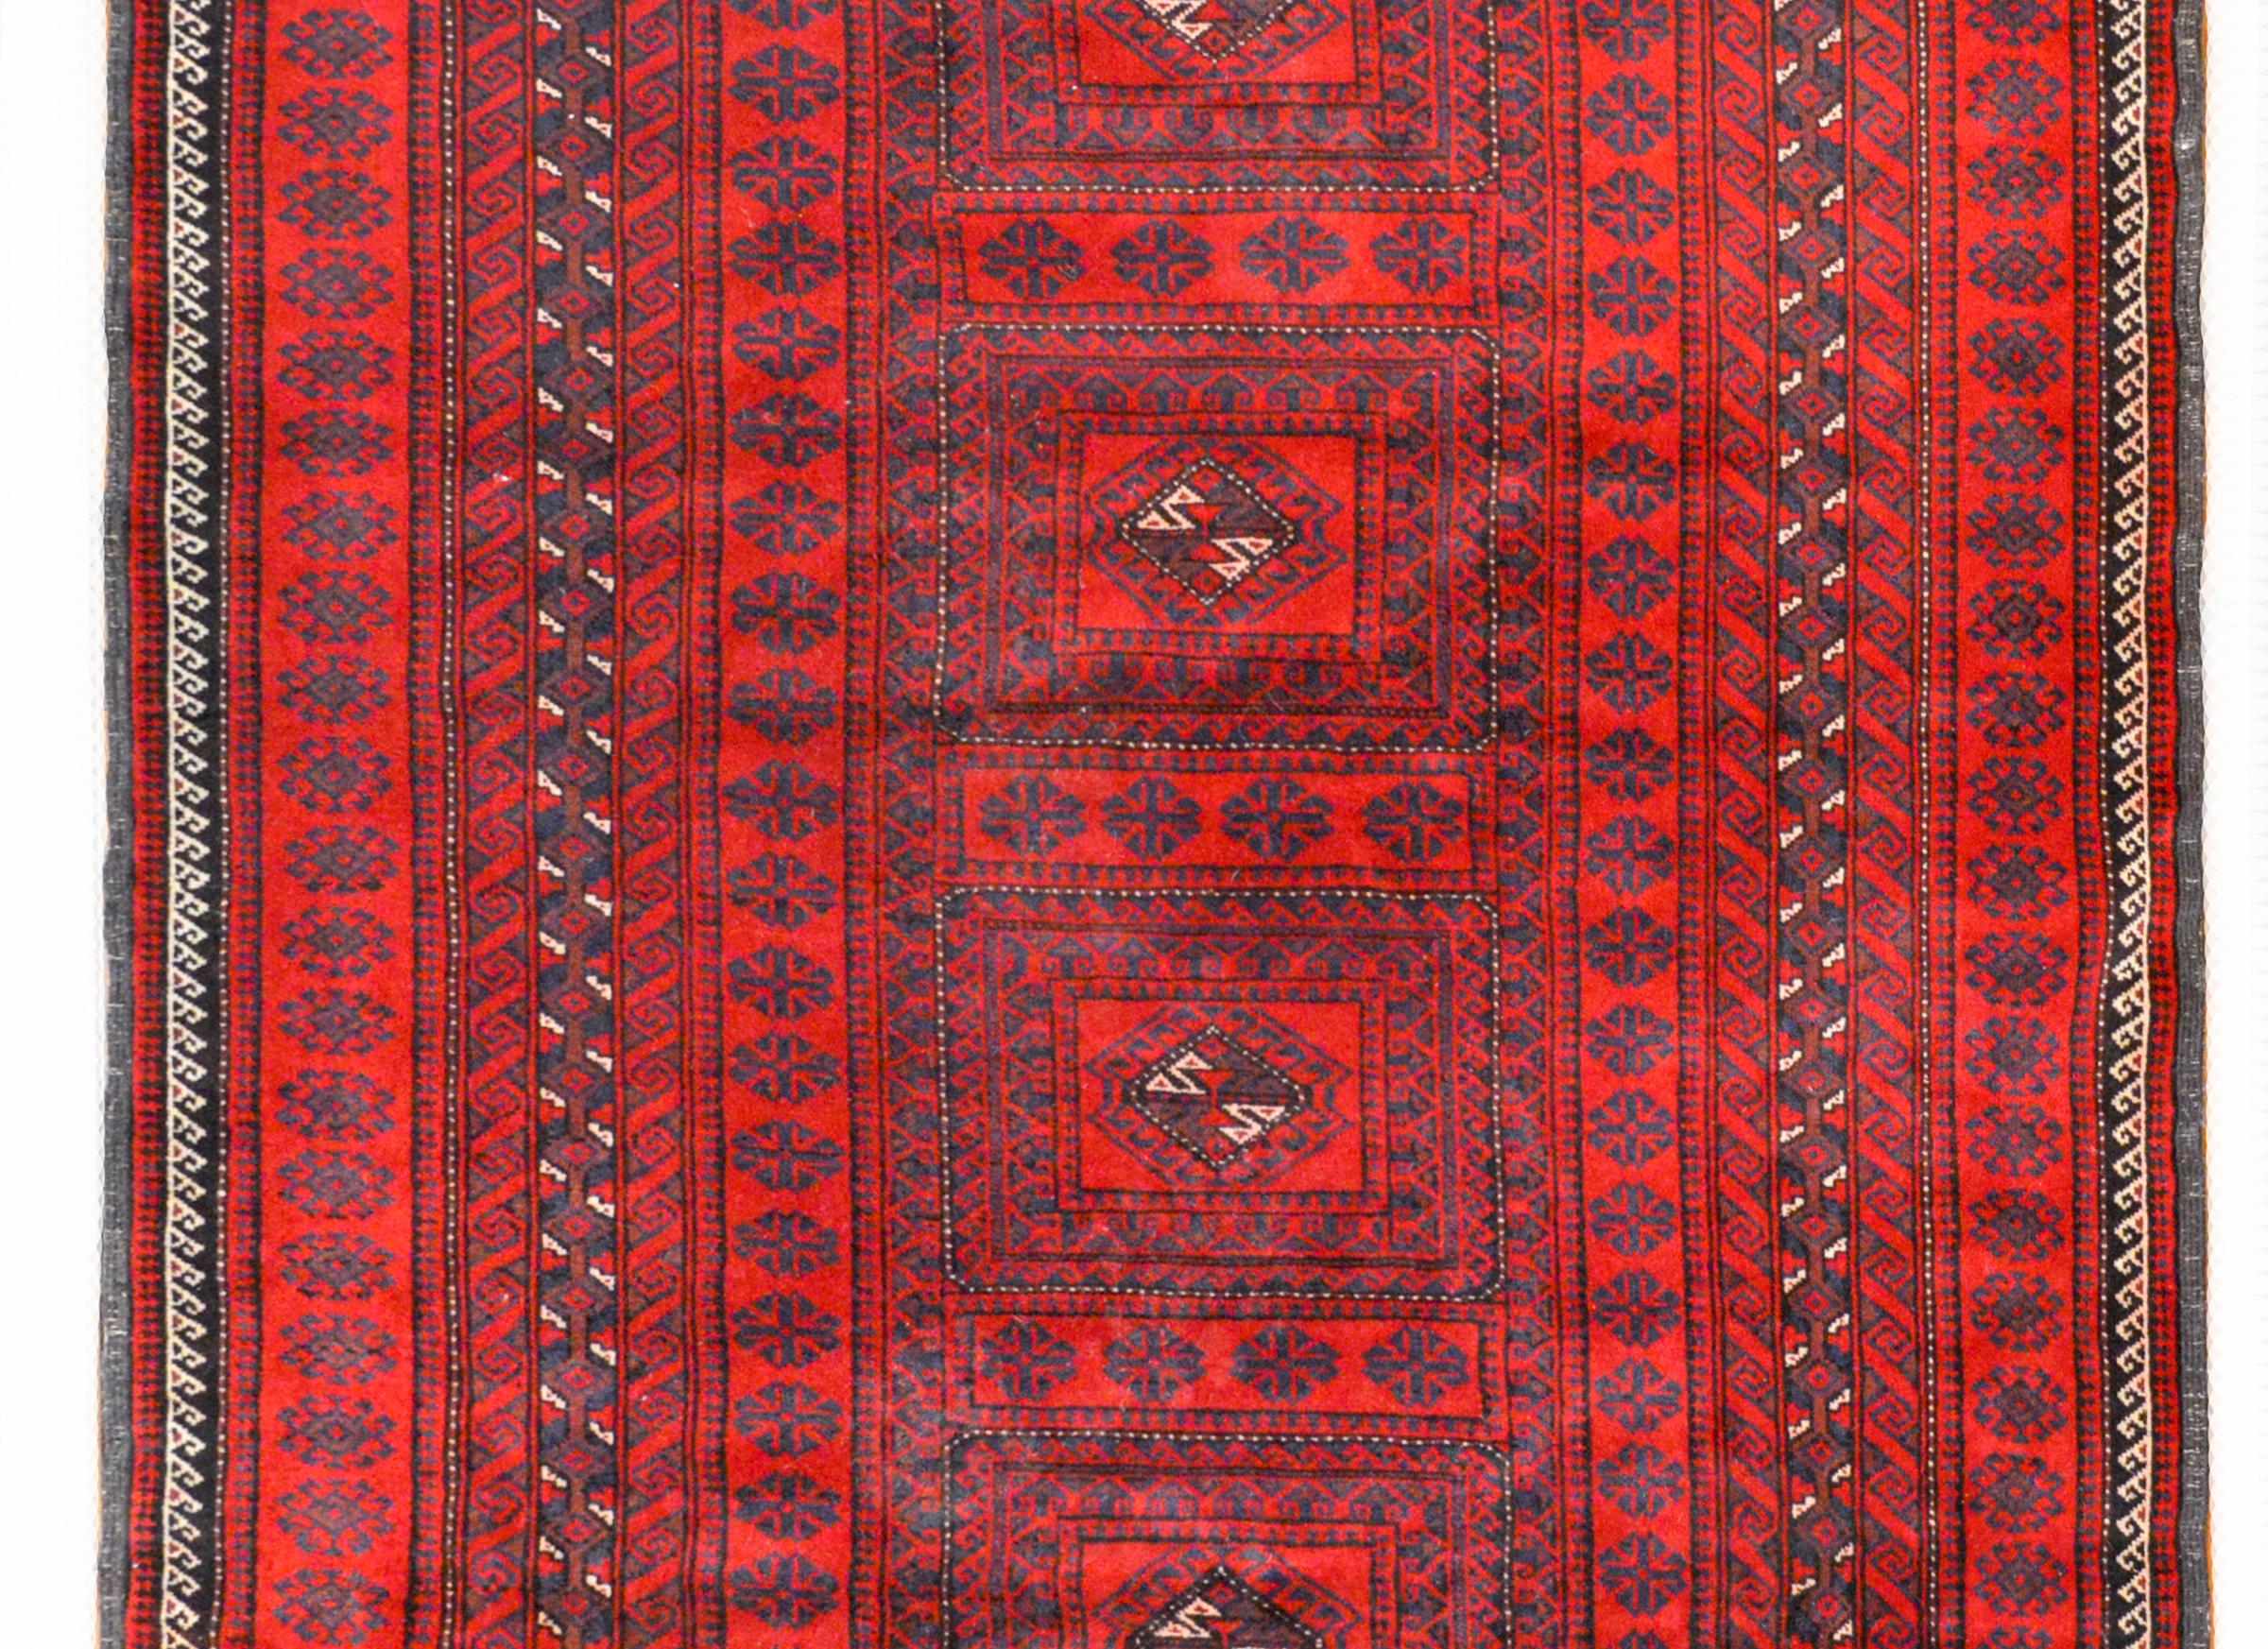 Ein schöner afghanisch-turkmenischer Teppich aus der Mitte des 20. Jahrhunderts mit sechs quadratischen Medaillons, die von einer kunstvollen und breiten Bordüre aus unzähligen geometrischen und floral gemusterten Streifen umgeben sind, die alle in